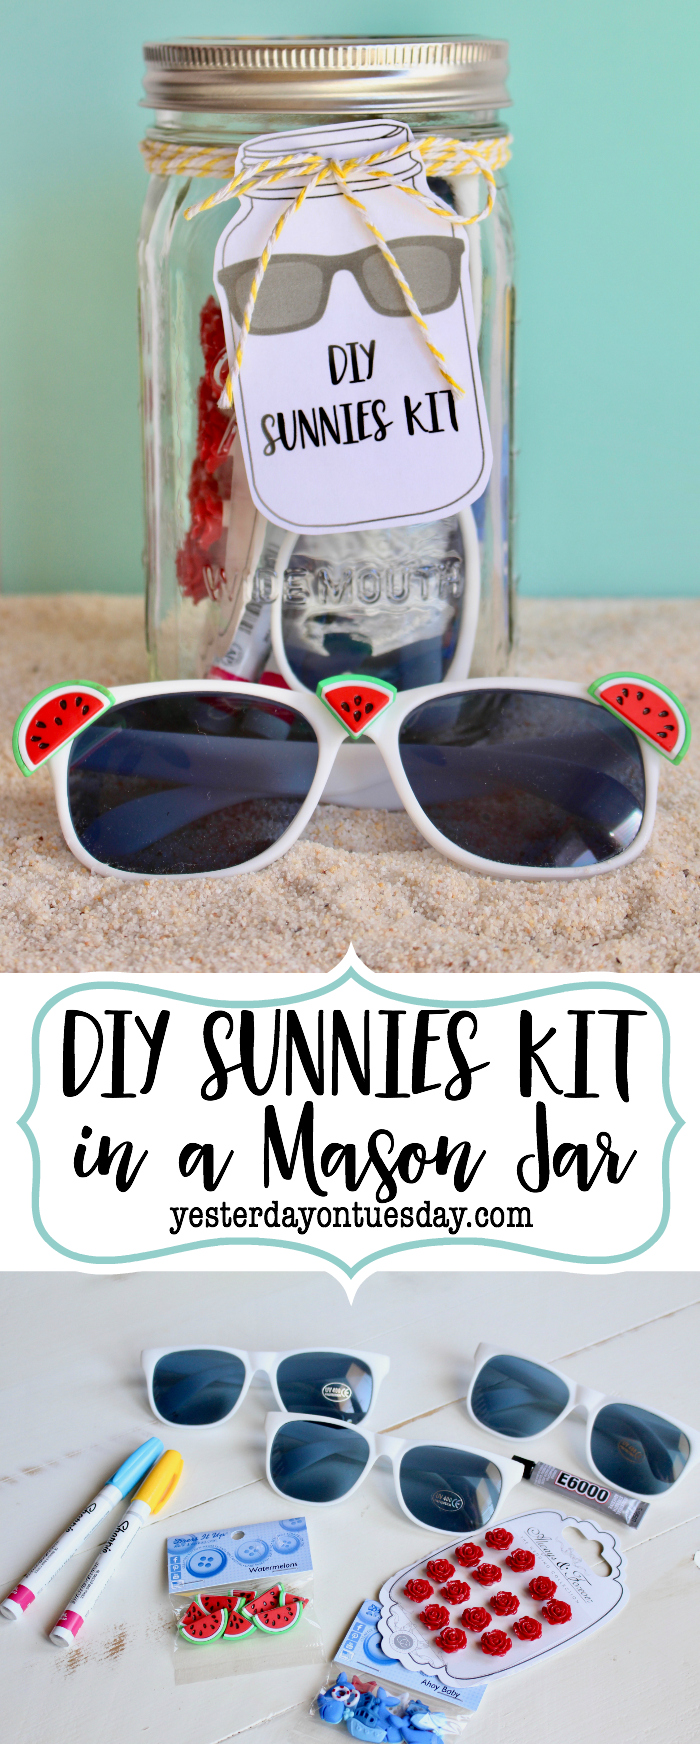 DIY Sunnies Kit in a Mason Jar